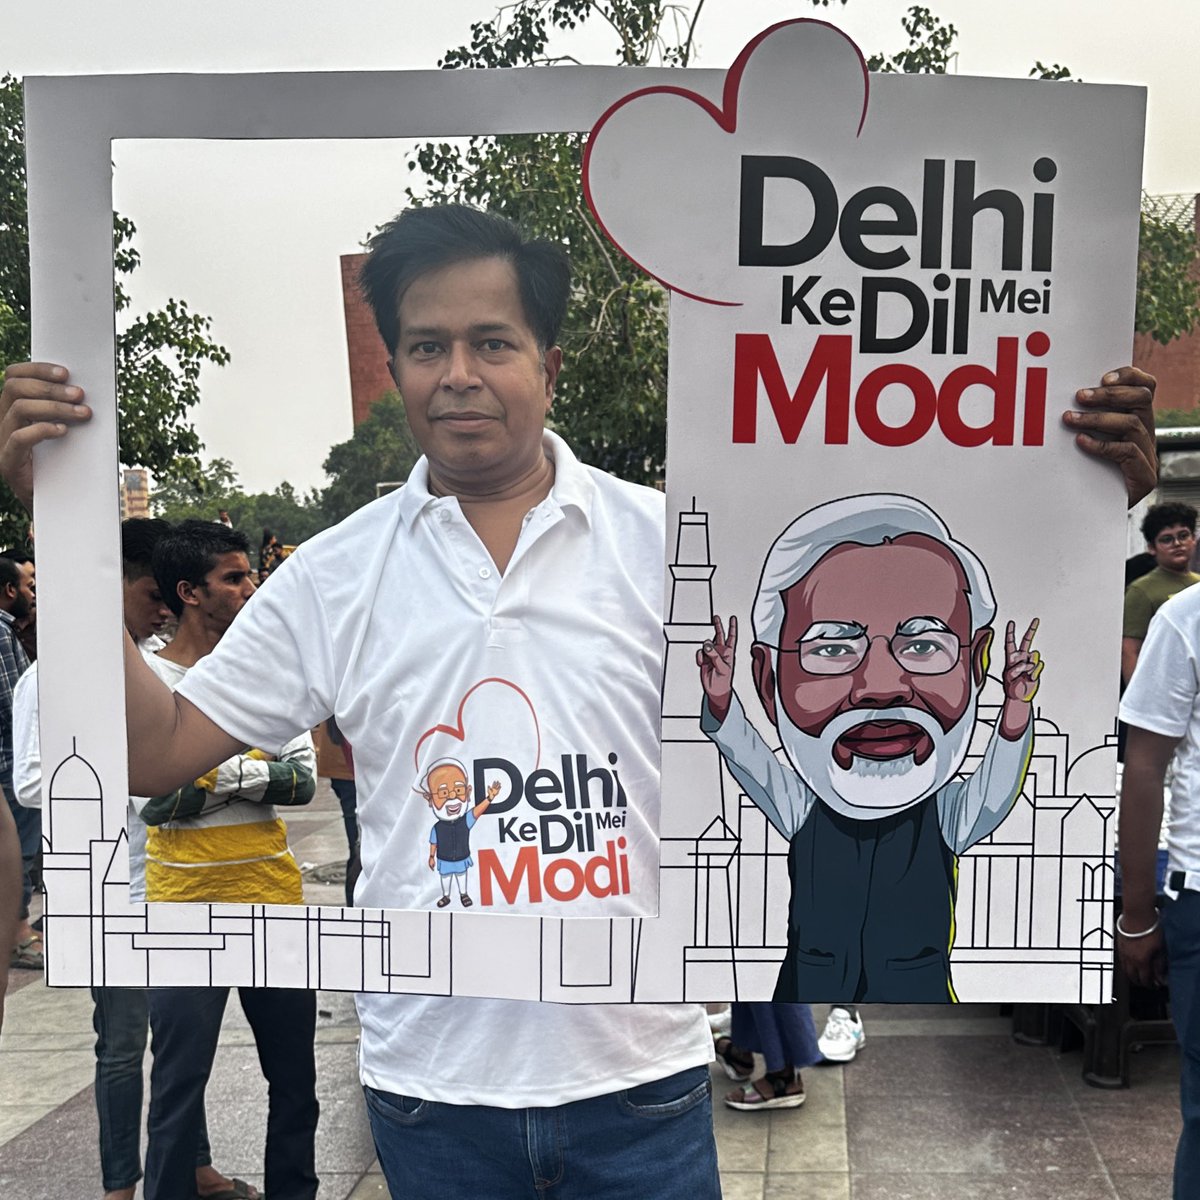 #DelhiKeDilMeiModi